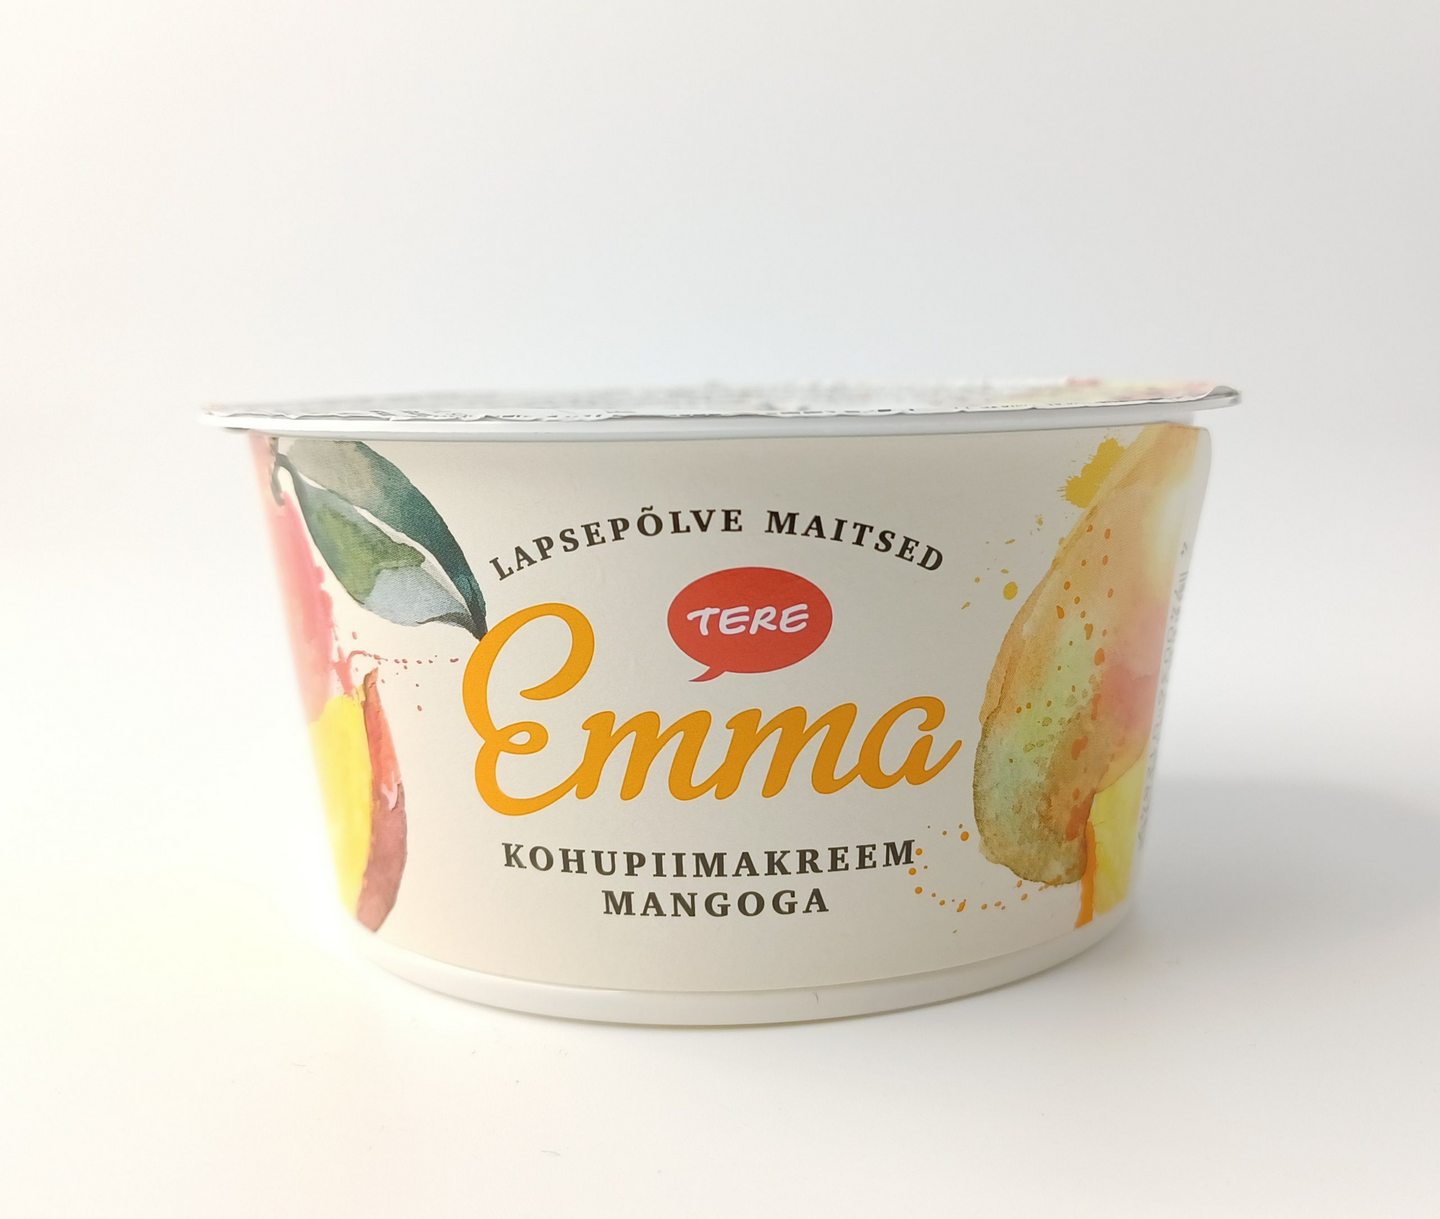 Tere Emma mangorahka 150g | K-Ruoka Verkkokauppa